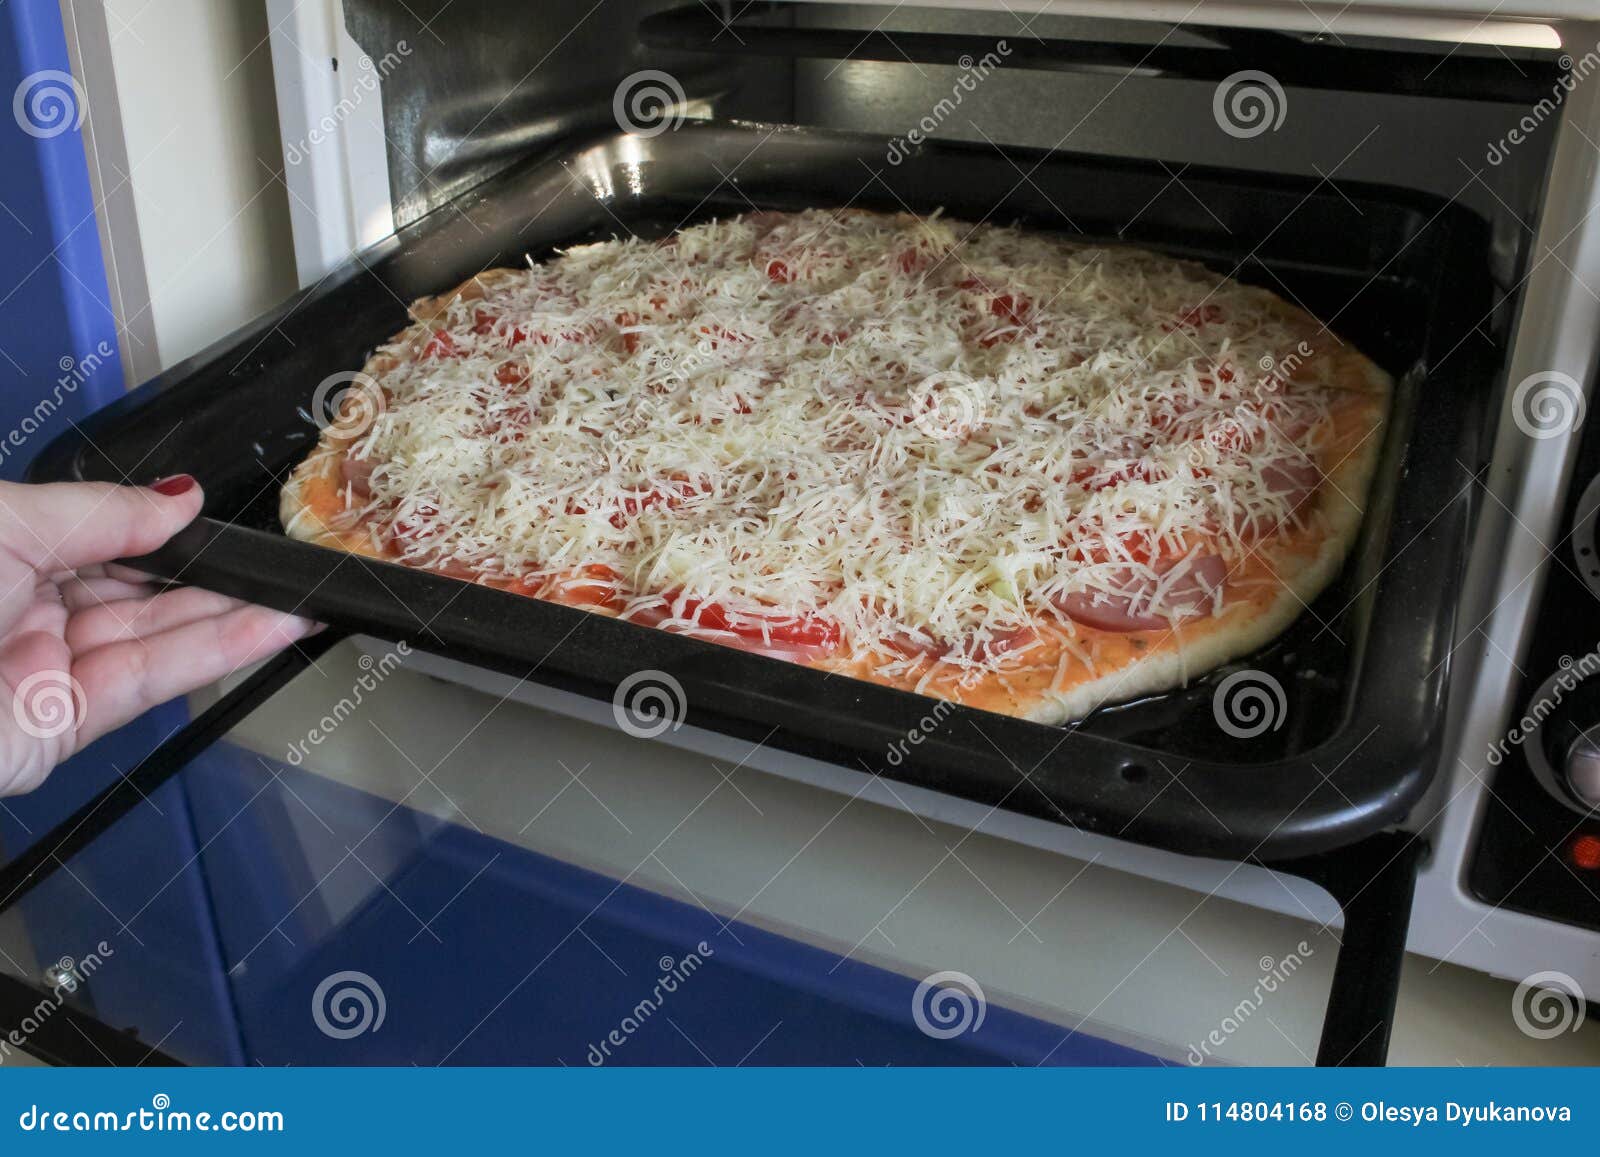 чтобы пицца не подгорела в духовке фото 9